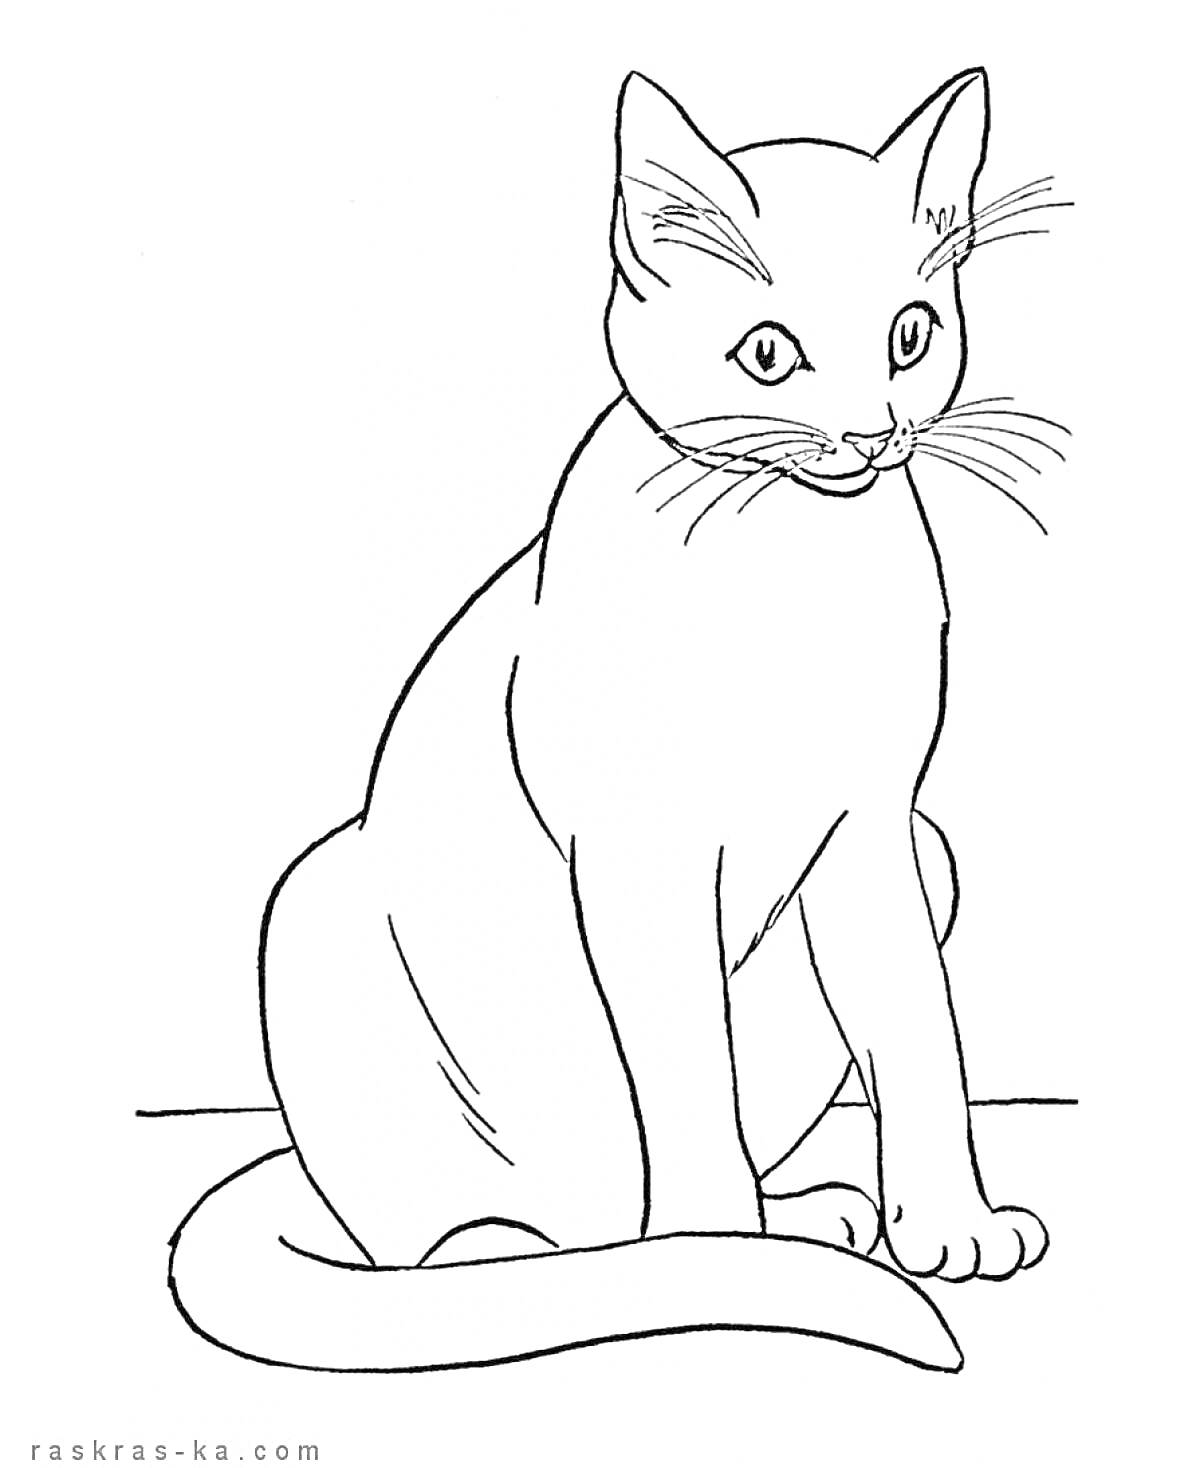 Раскраска Сидящий кот с длинным хвостом, смотрящий вперед